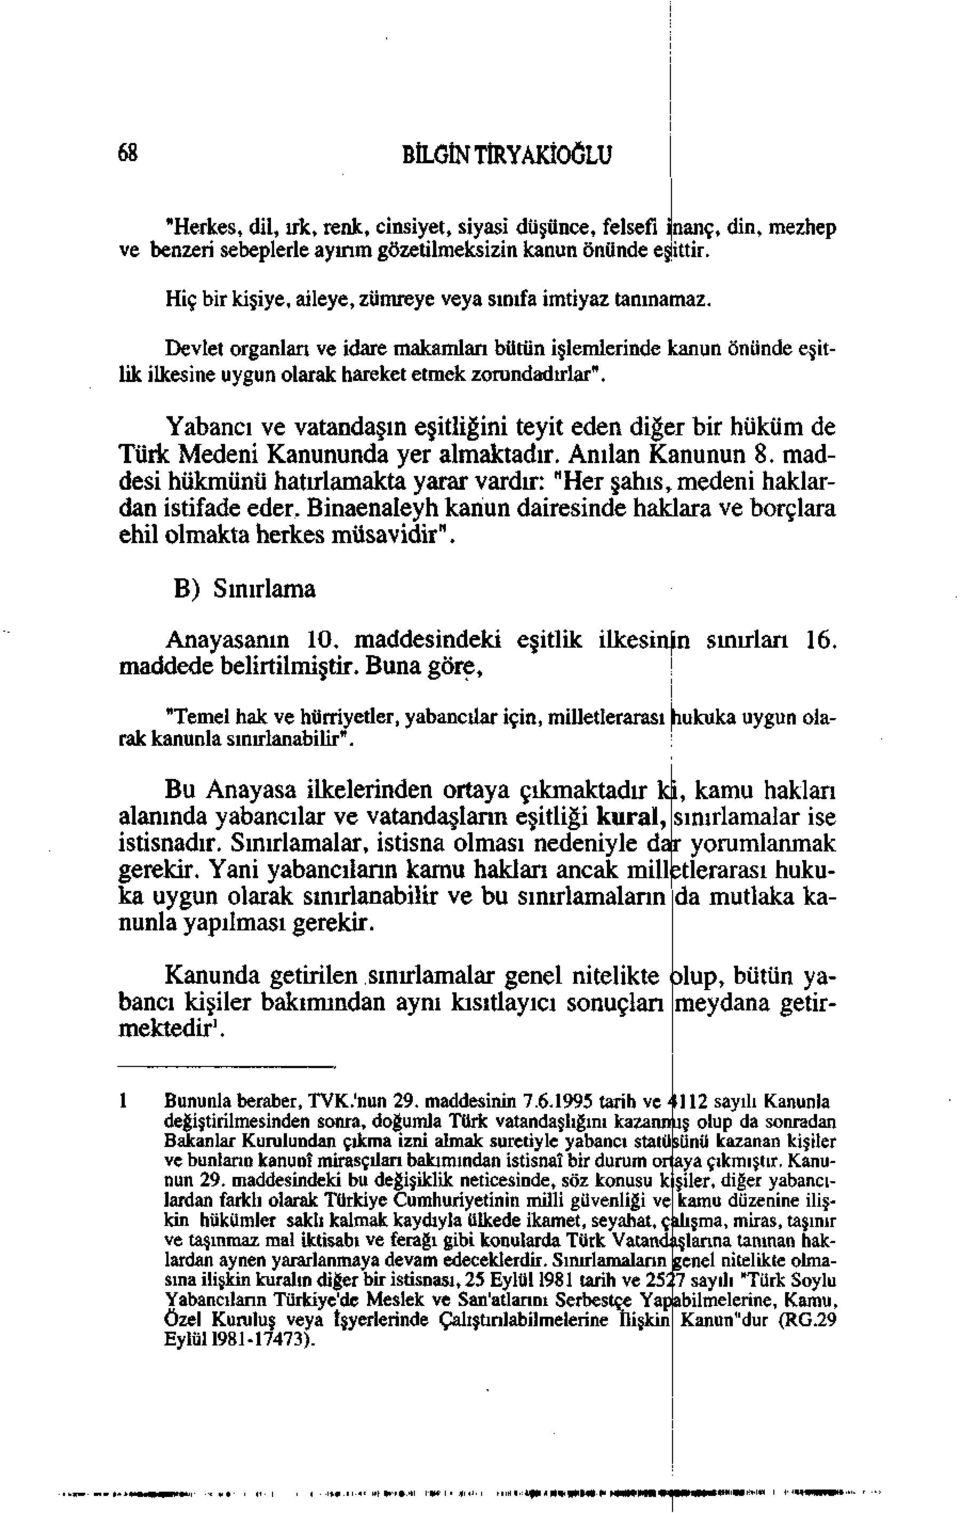 Yabancı ve vatandaşın eşitliğini teyit eden diğer bir hüküm de Türk Medeni Kanununda yer almaktadır. Anılan Kanunun 8.